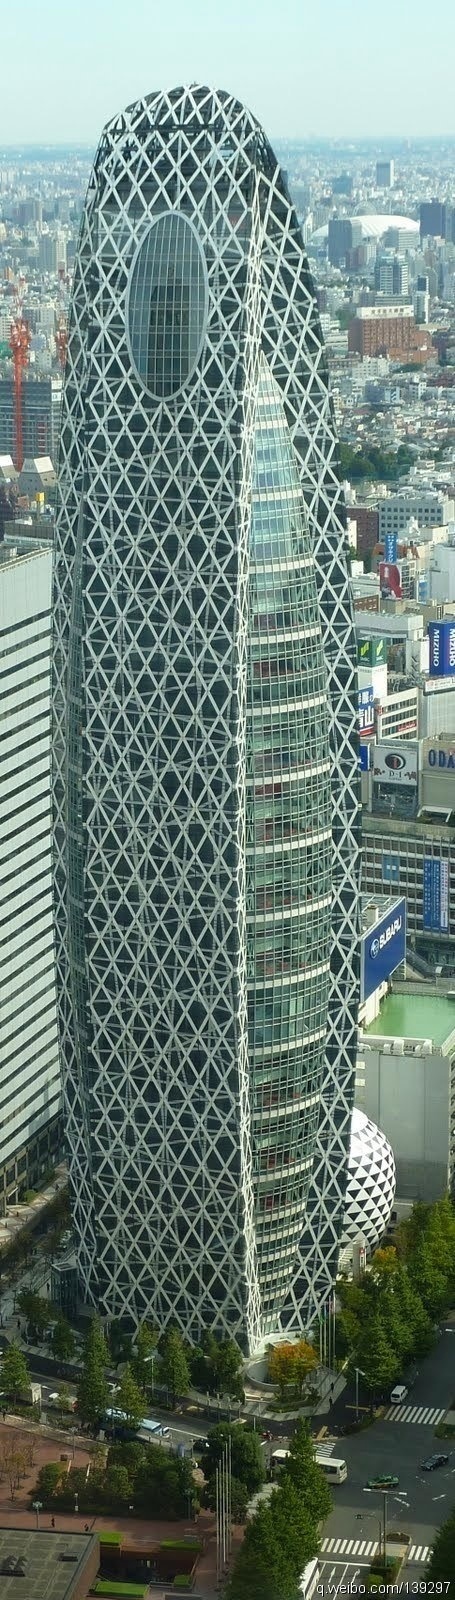 日本钢架结构的校舍建筑